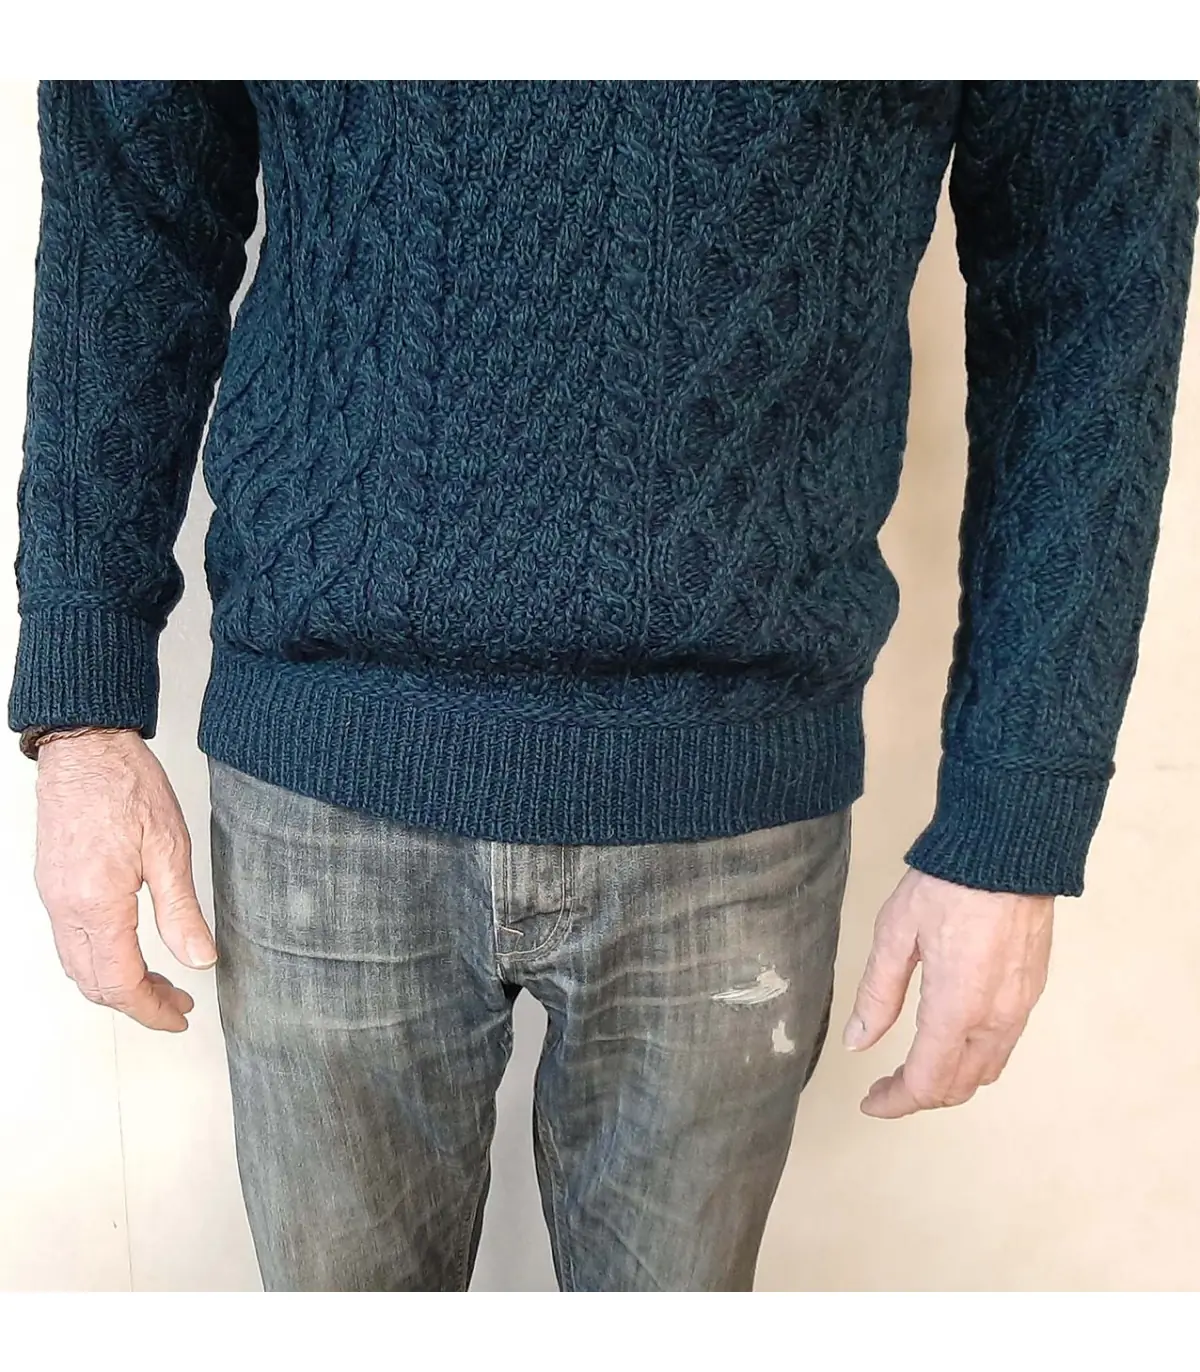 Jersey lana merino lavable - Hombre